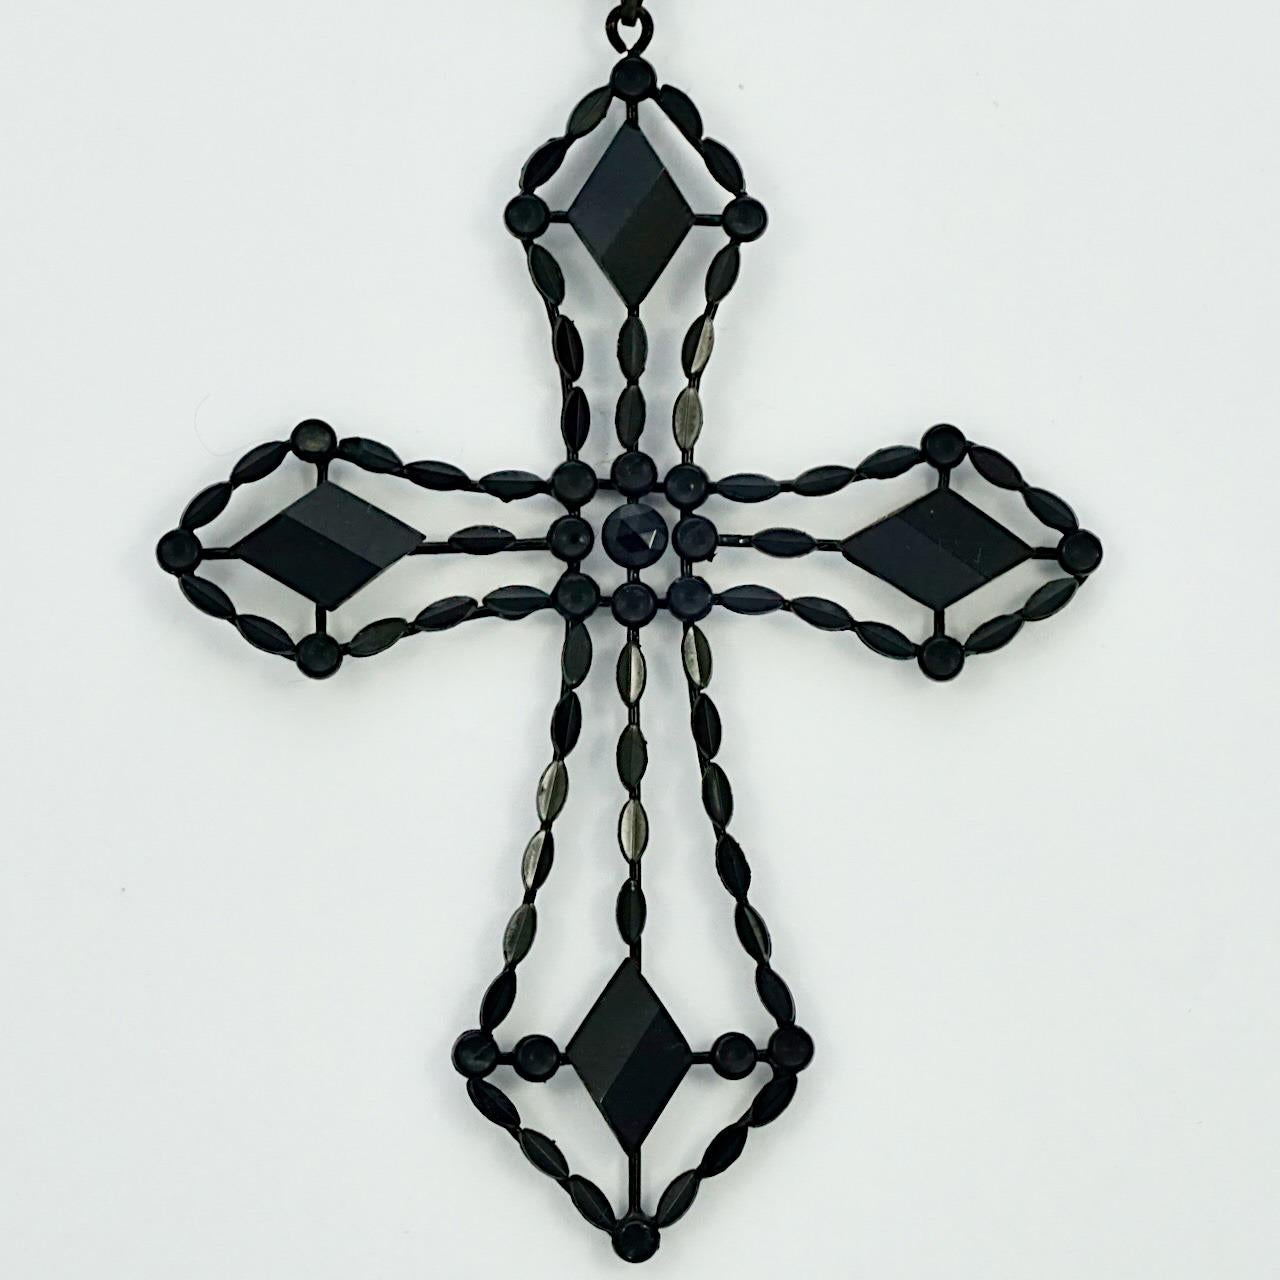 Pendentif croix Art Déco en jais français, avec une chaîne de perles de verre noires. Ce magnifique pendentif comporte des pièces de jais français facettées. Chaque pièce est dans une monture émaillée noire et appliquée sur un fil émaillé. Longueur